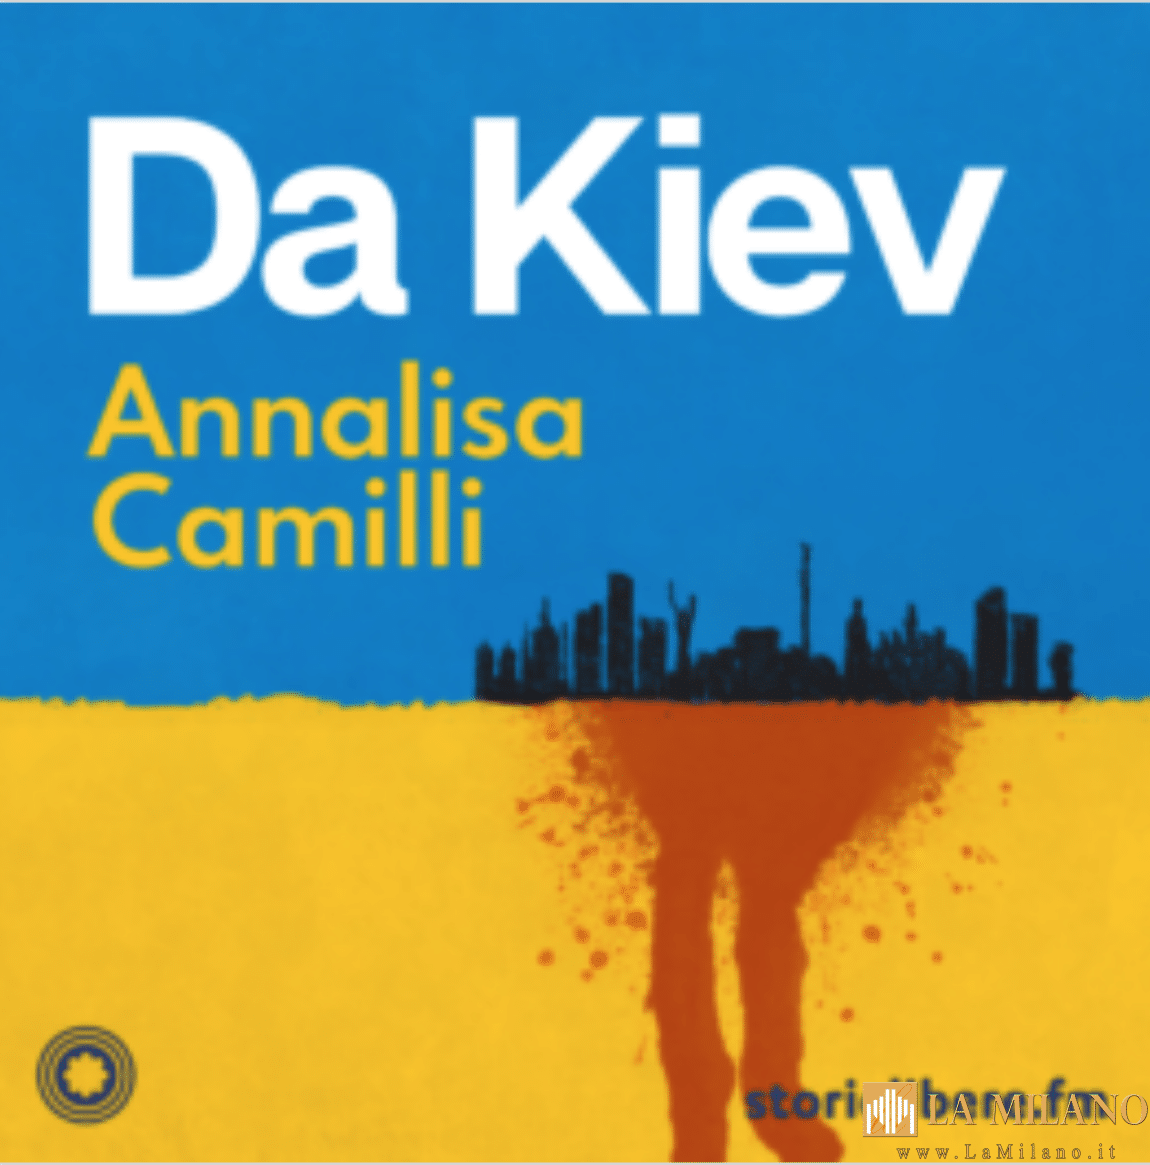 Milano, il podcast “Da Kiev" di Annalisa Camilli sulla piattaforma di Storielibere.fm: il racconto della città sotto assedio